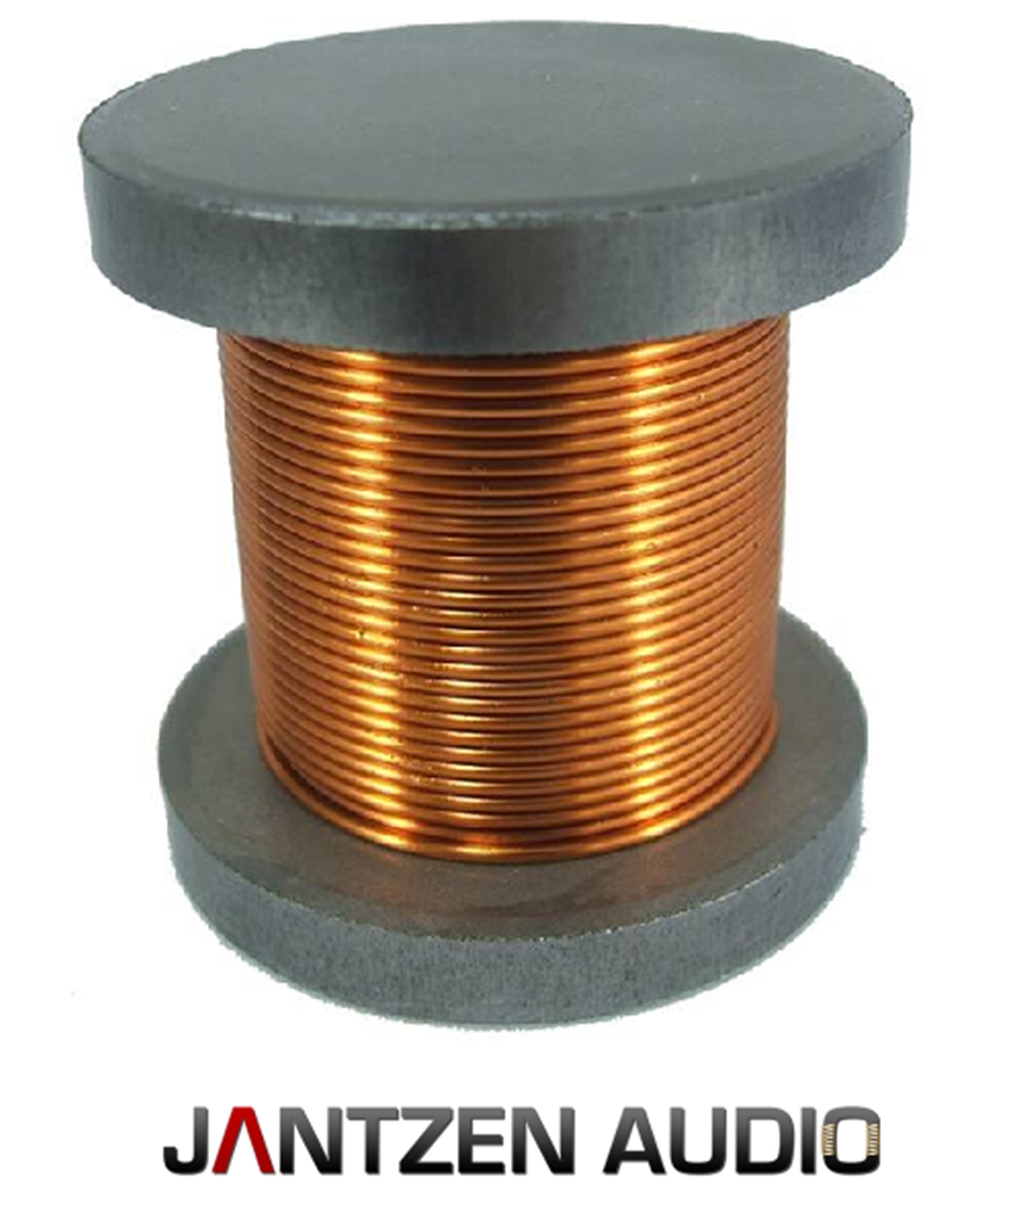 Катушка индуктивности на 12. Катушка индуктивности Jantzen Iron Core Coil + Discs. Катушка индуктивности bn3m 20003a. Jantzen-Audio восковая катушка индуктор.